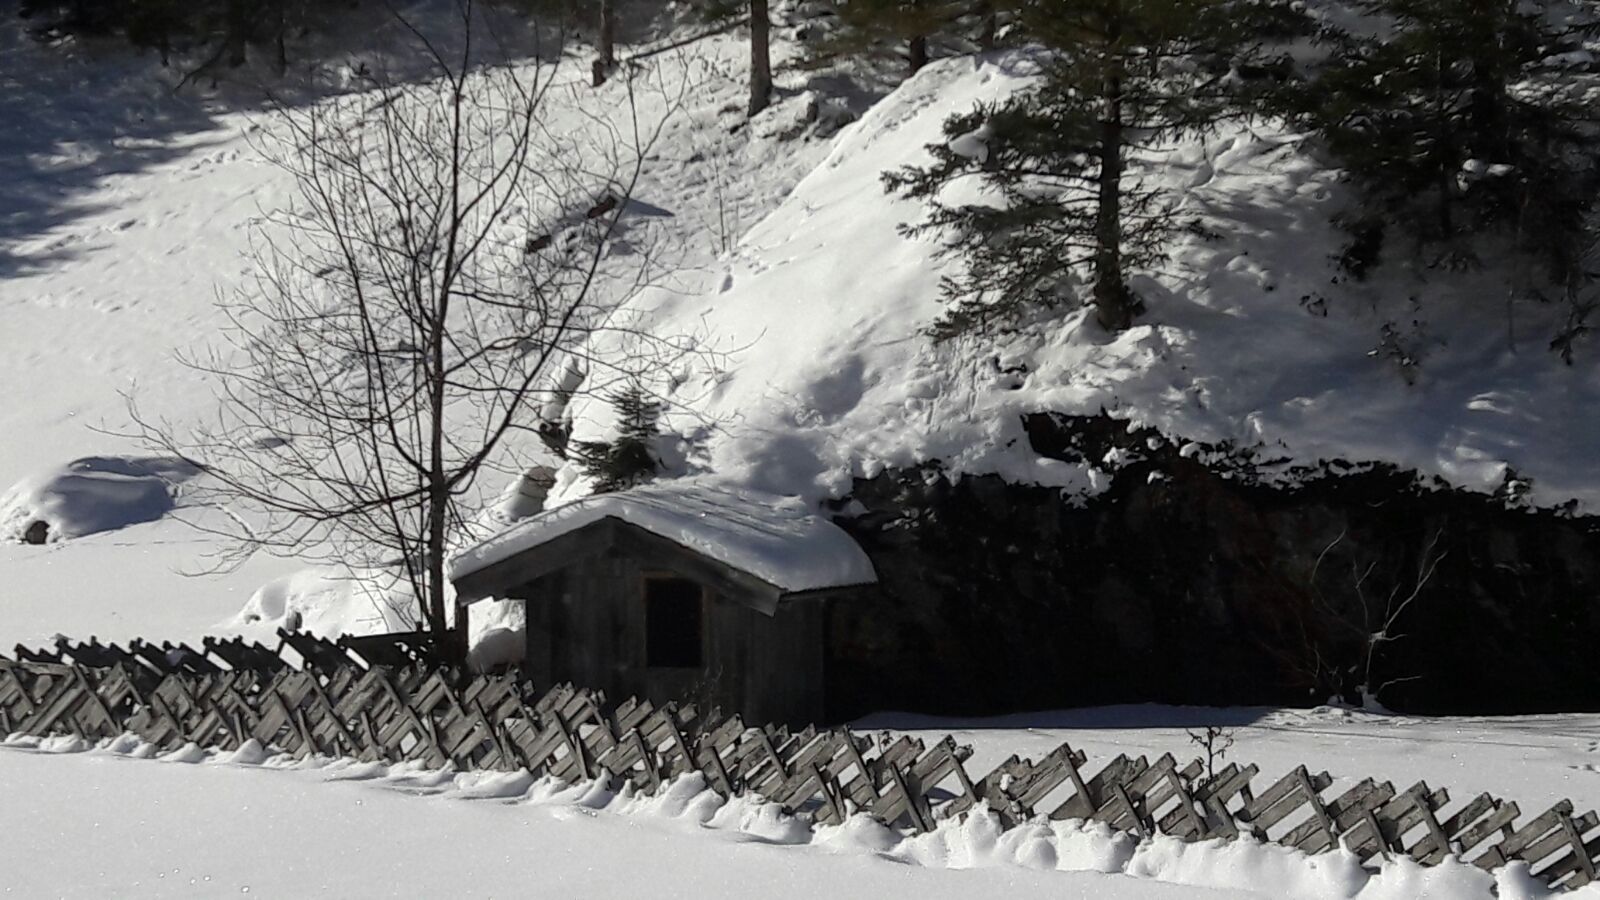 Unsere Hühnerhütte im Winter